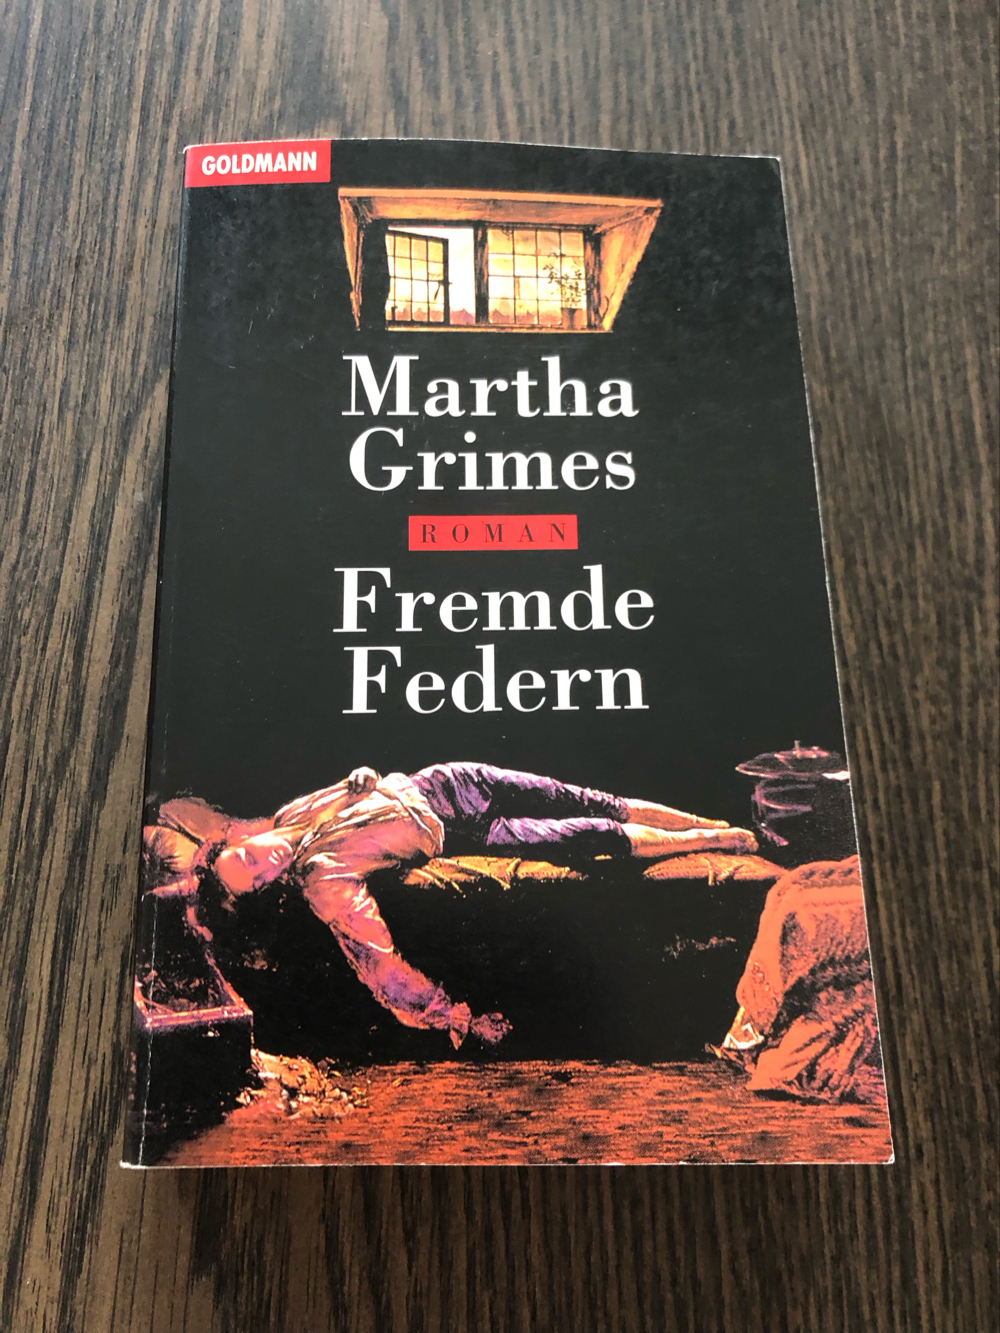 Fremde Federn, Martha Grimes